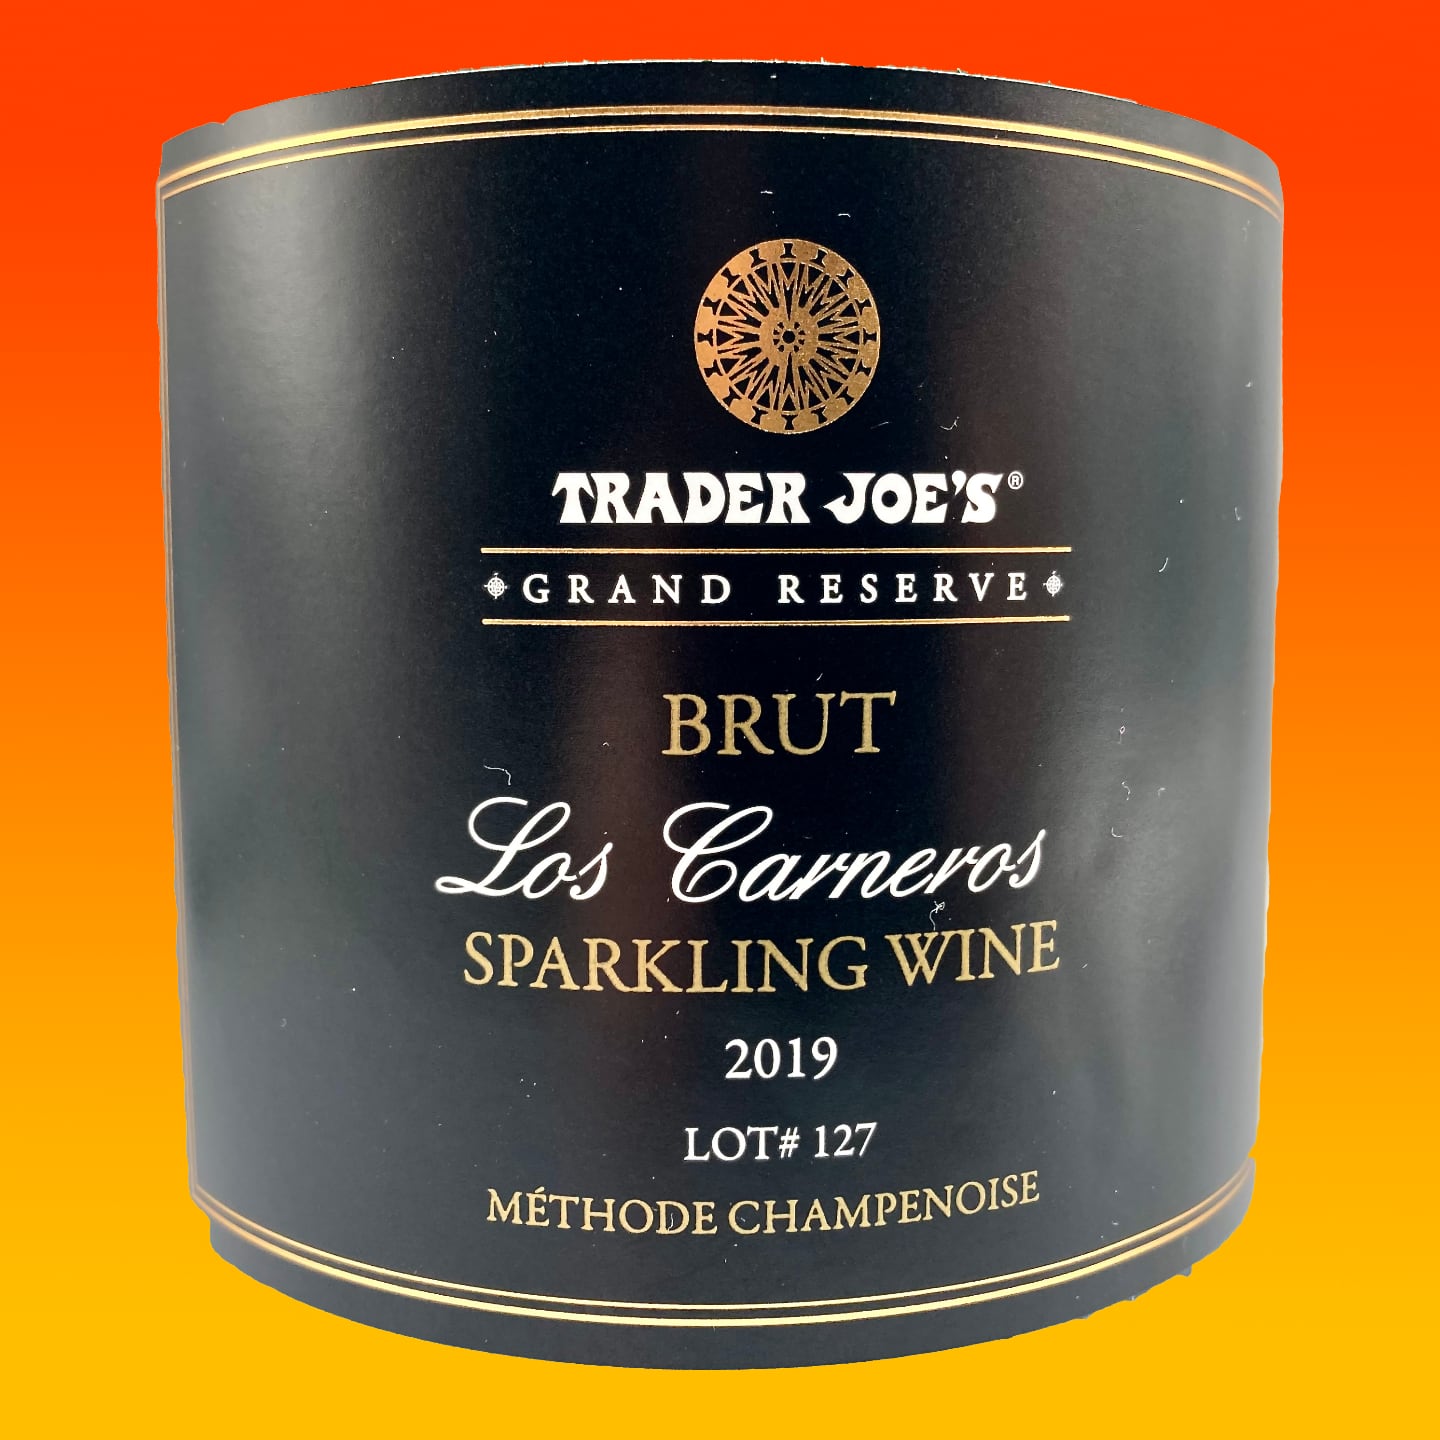 Trader Joe's Grand Reserve Los Carneros Brut Sparkling Wine 2019